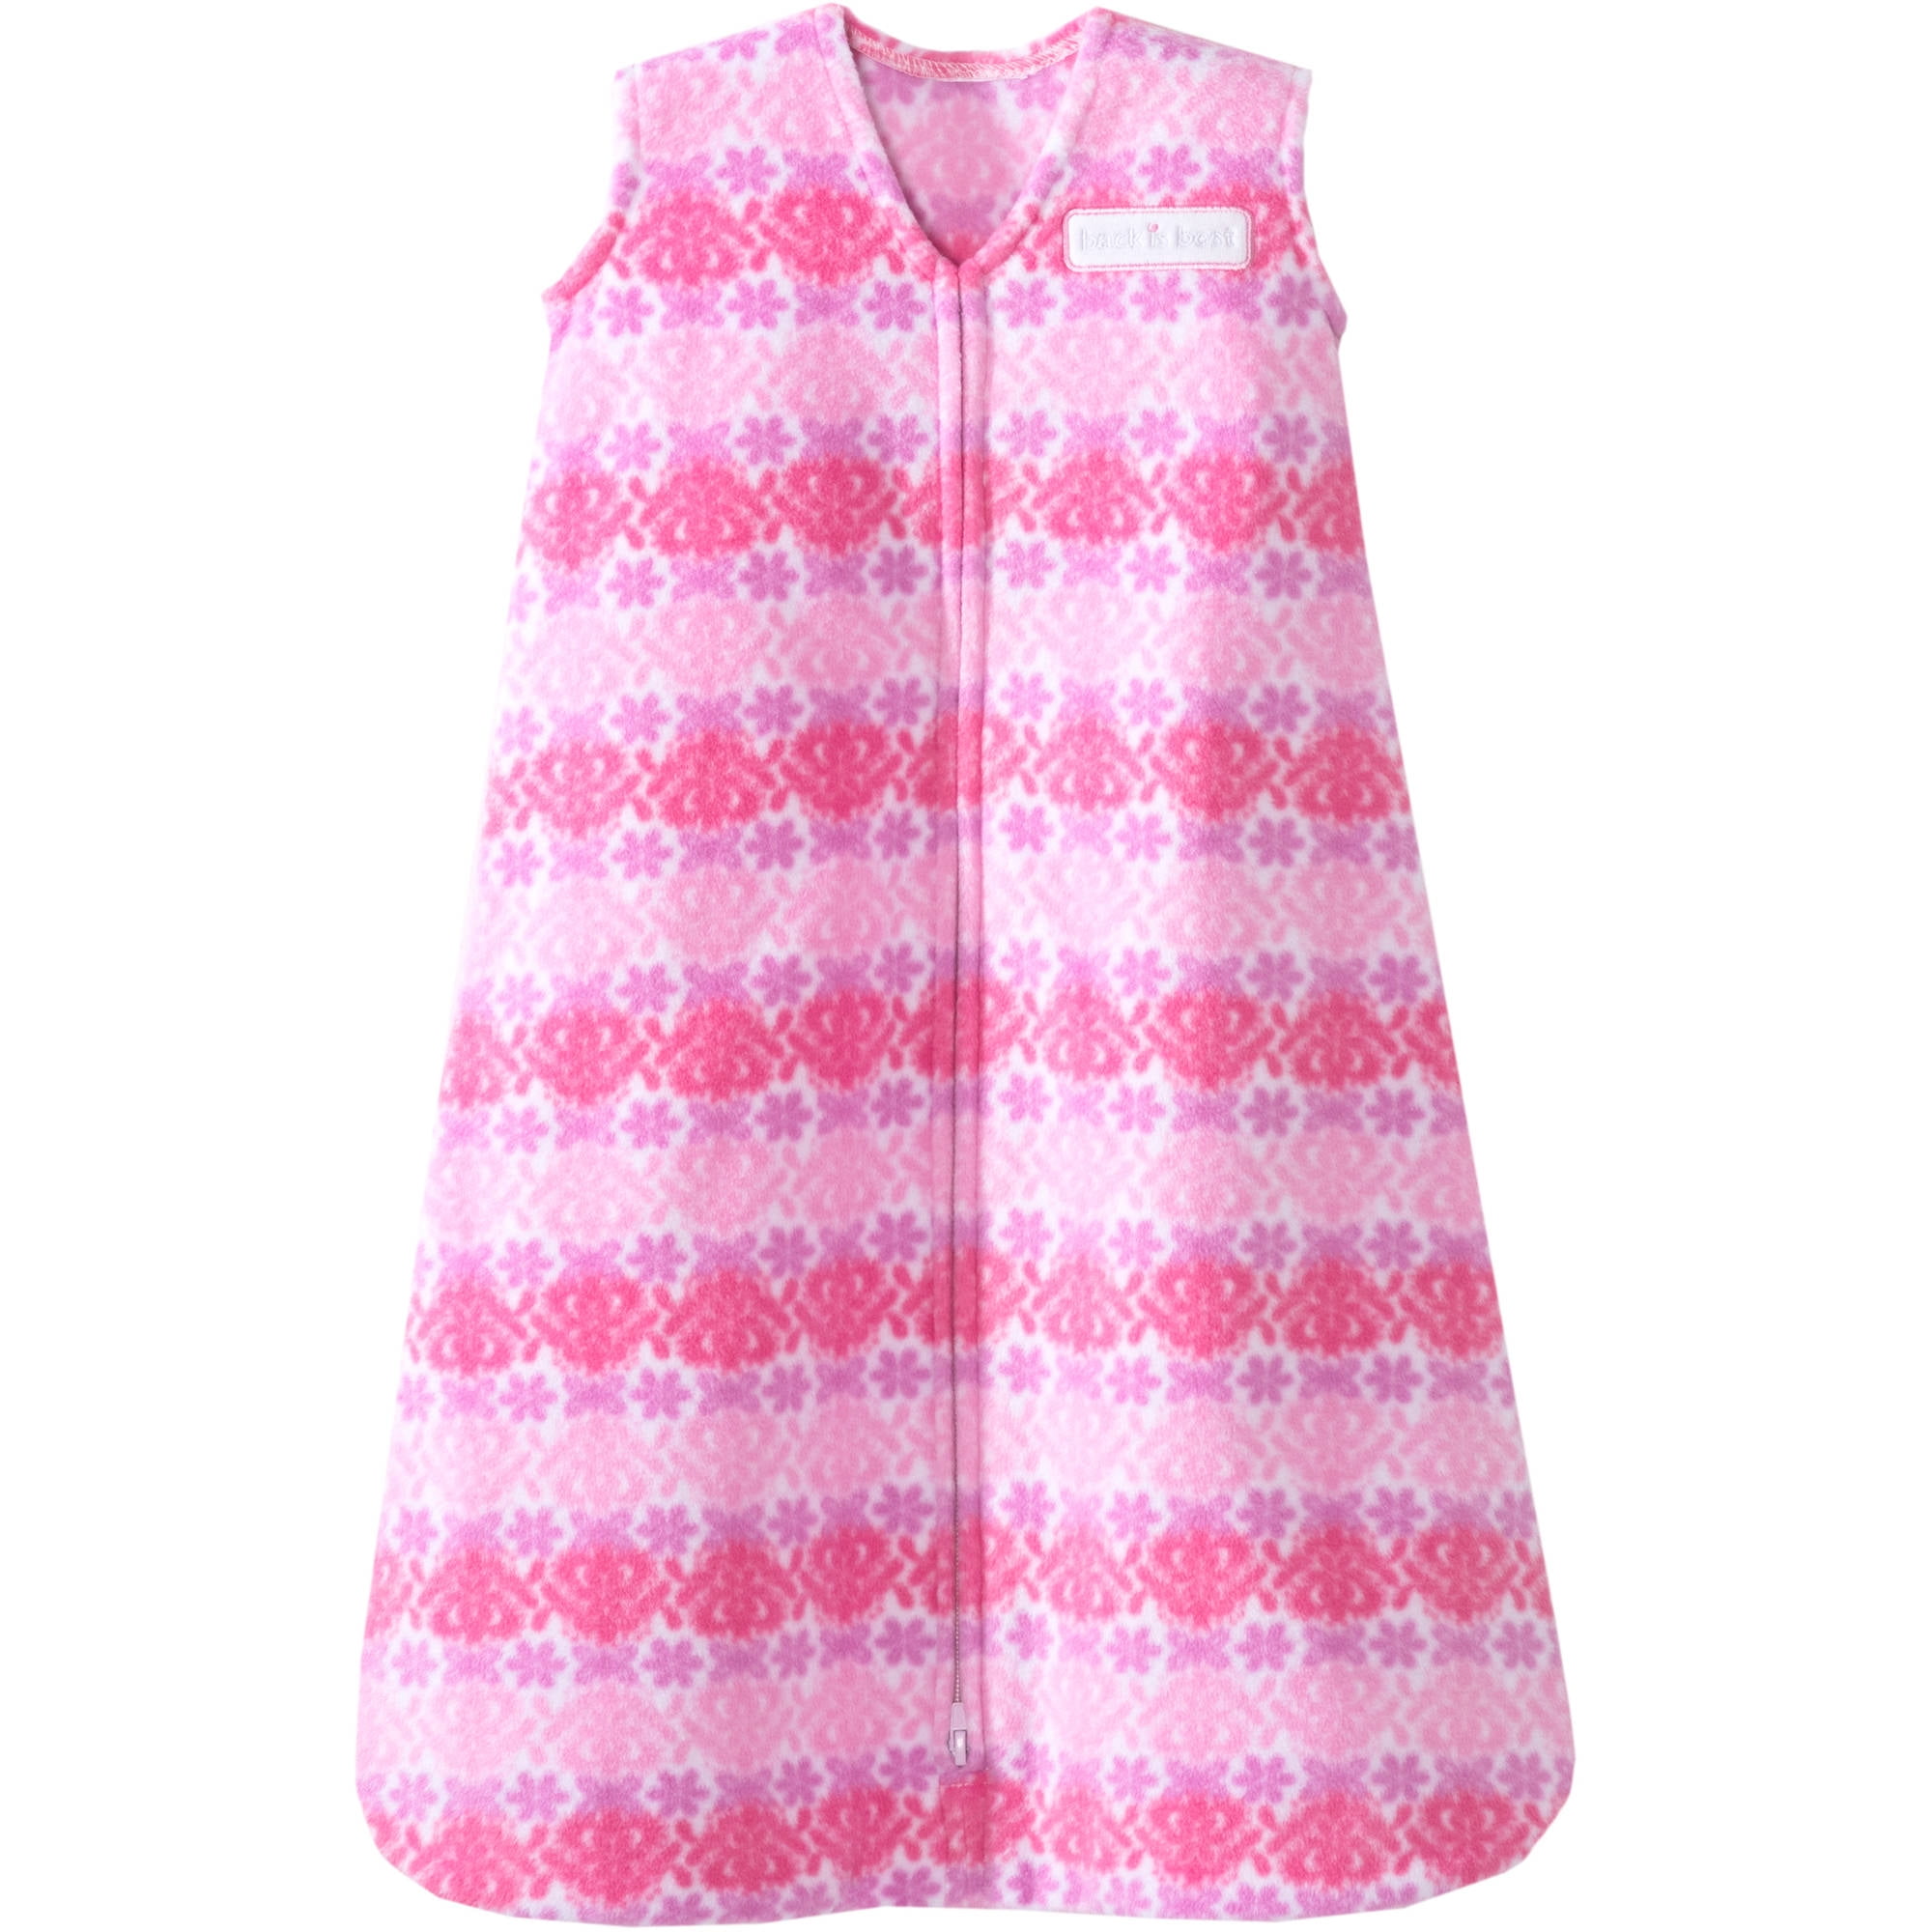 halo sleepsack wearable blanket microfleece, pink - Walmart.com ...